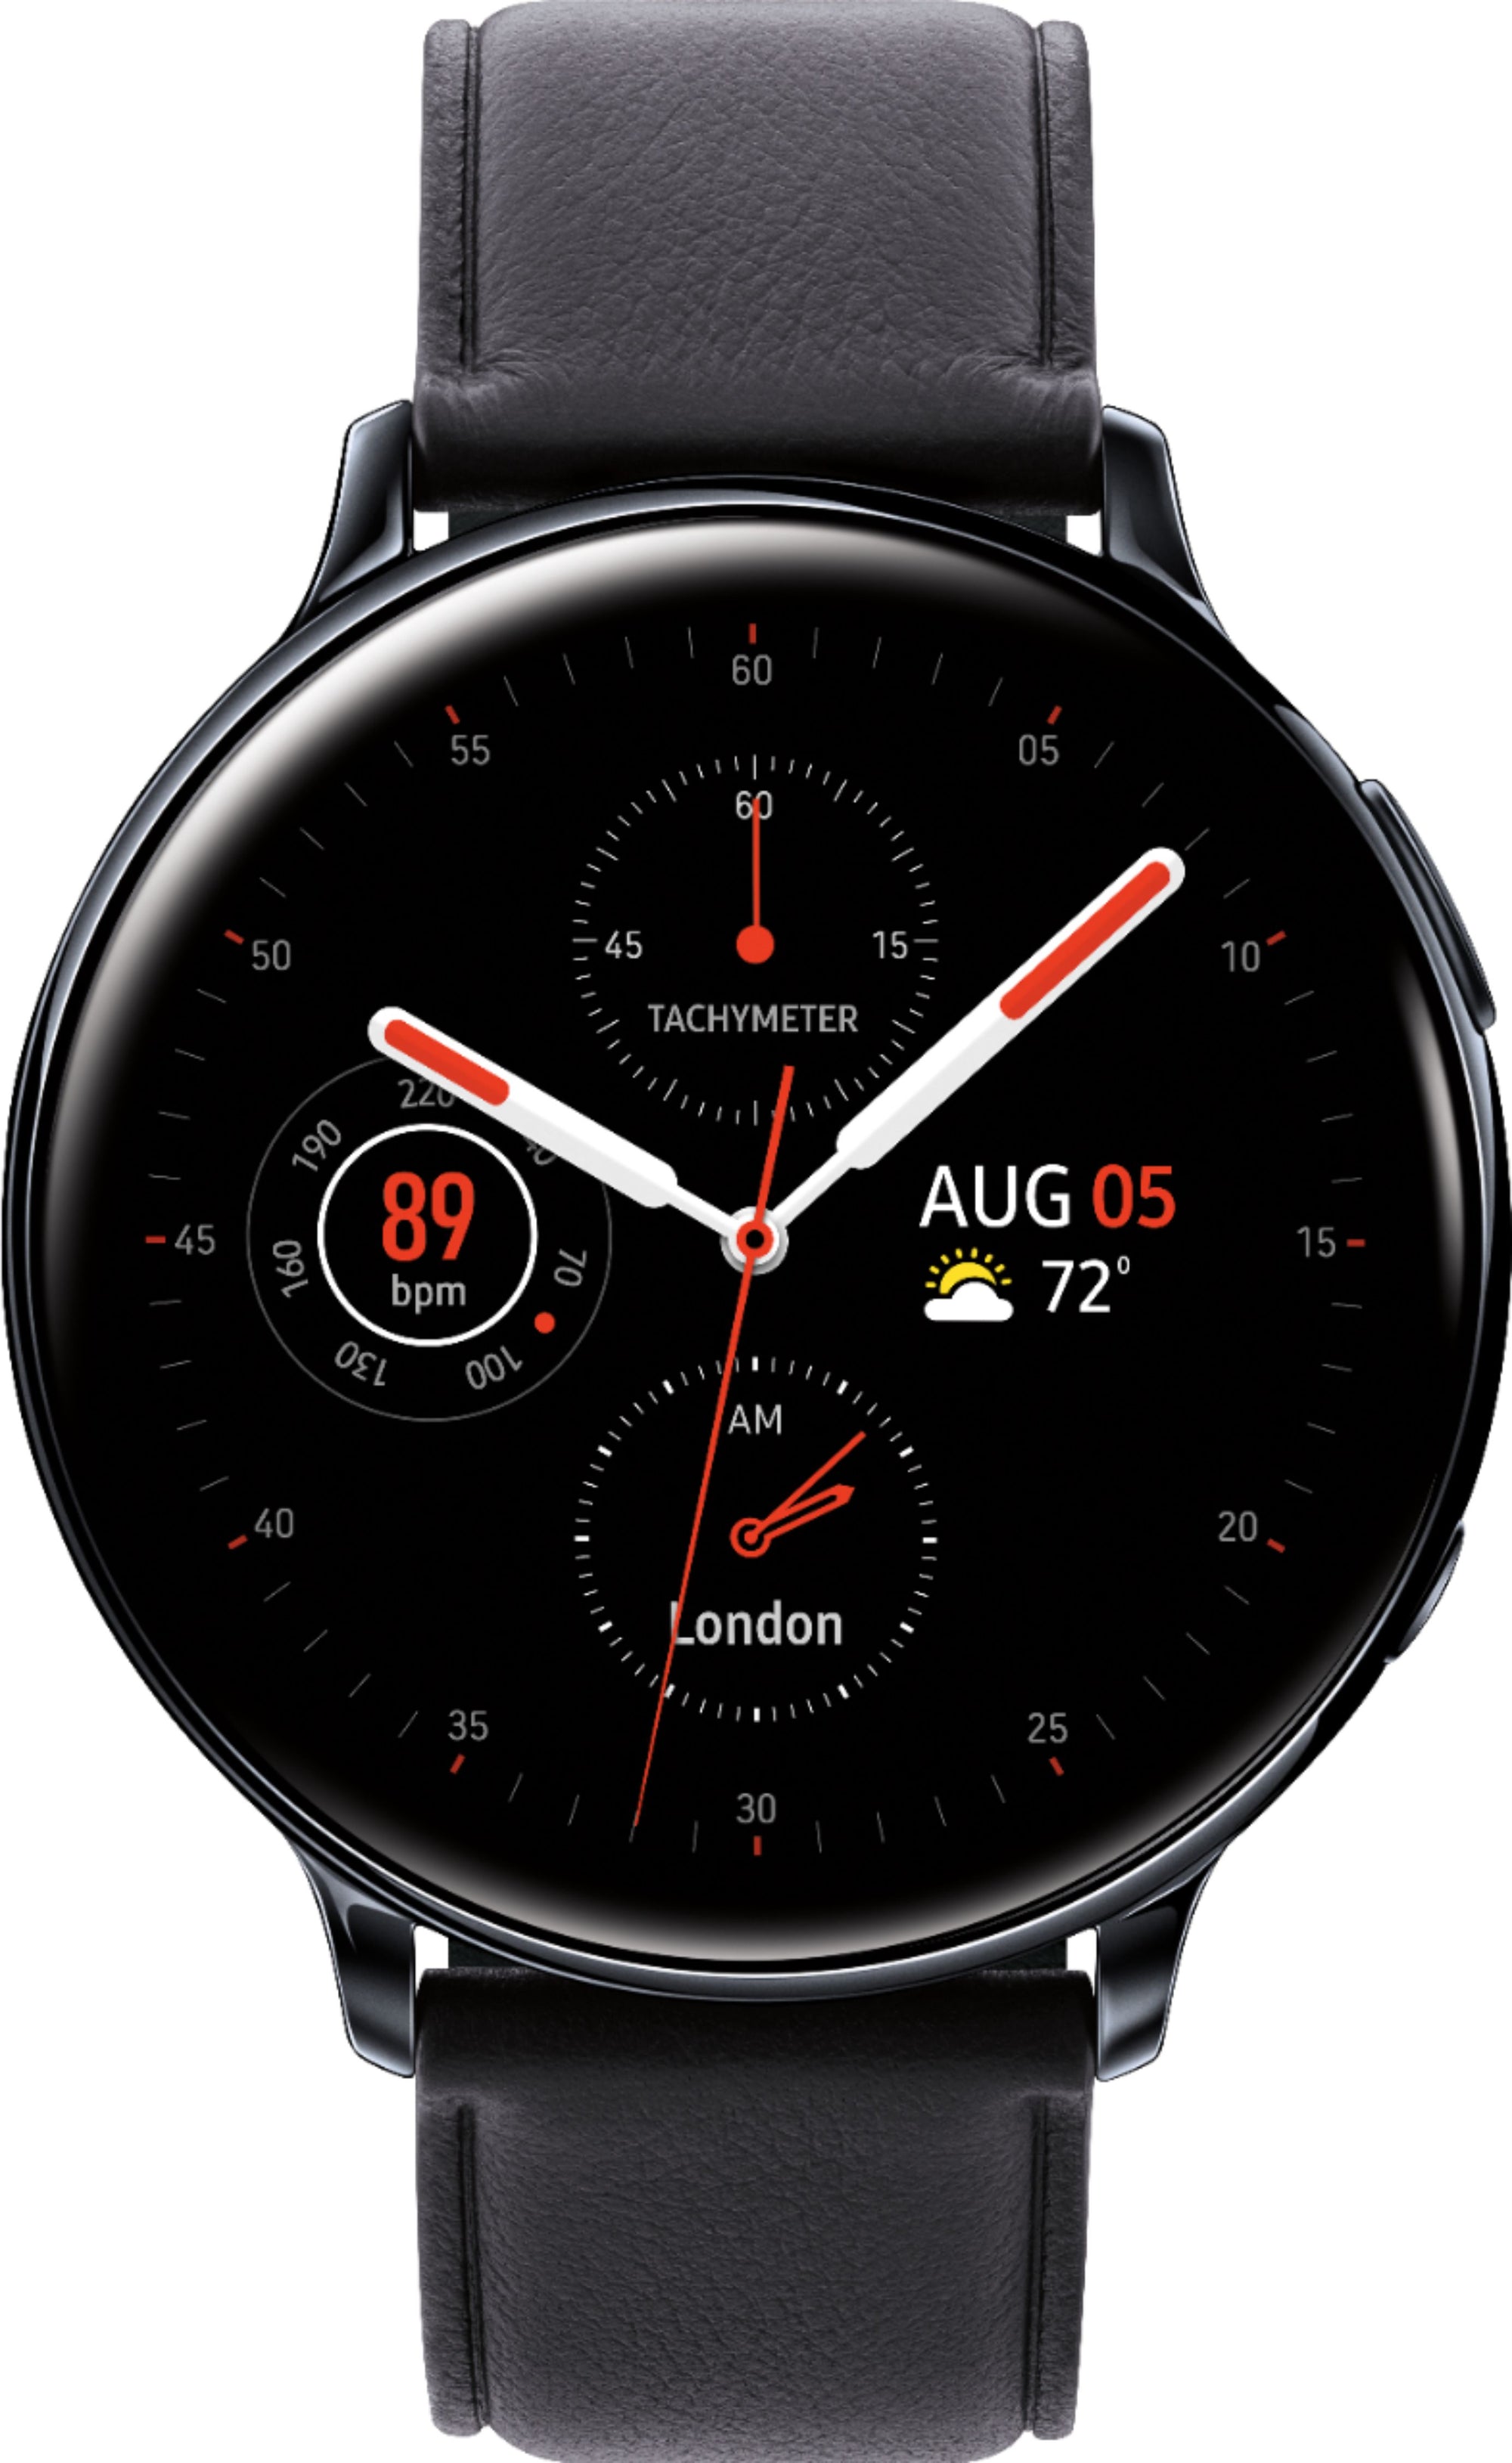 Samsung - SM-R825USKAXAR Galaxy Watch Active2 Smartwatch 44mm Stainless Steel LTE (Unlocked) - Black